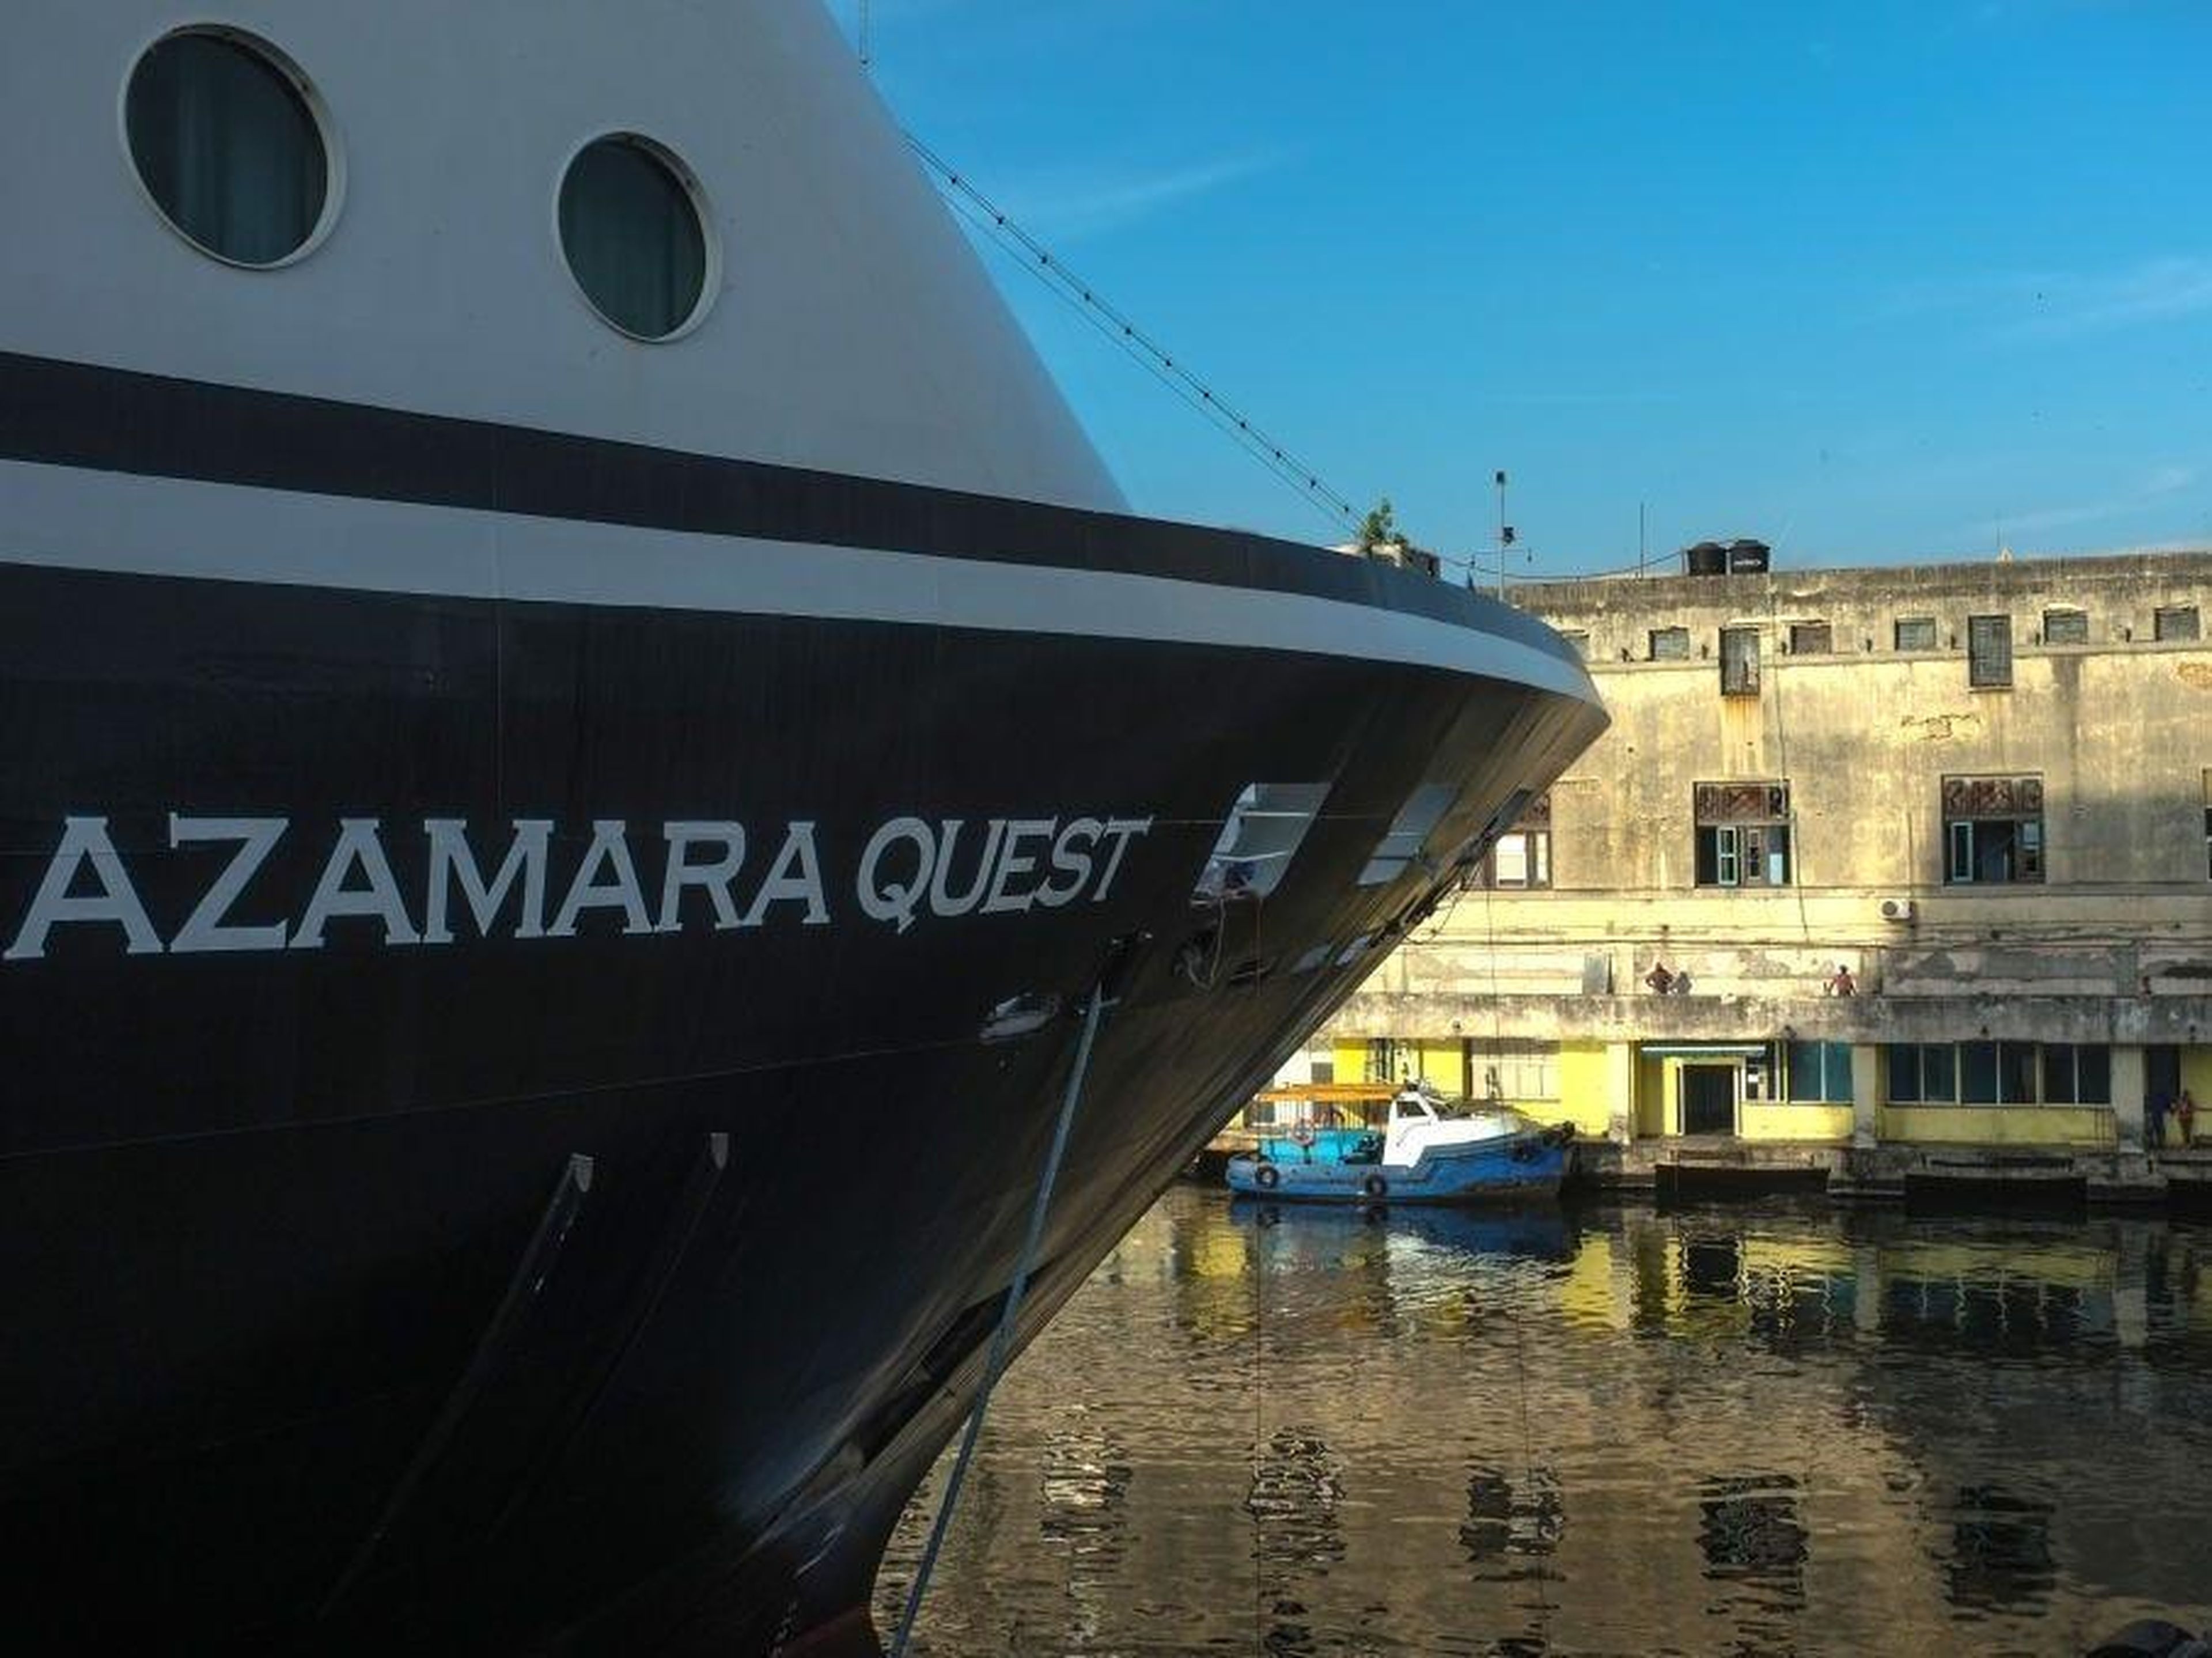 An Azamara ship.